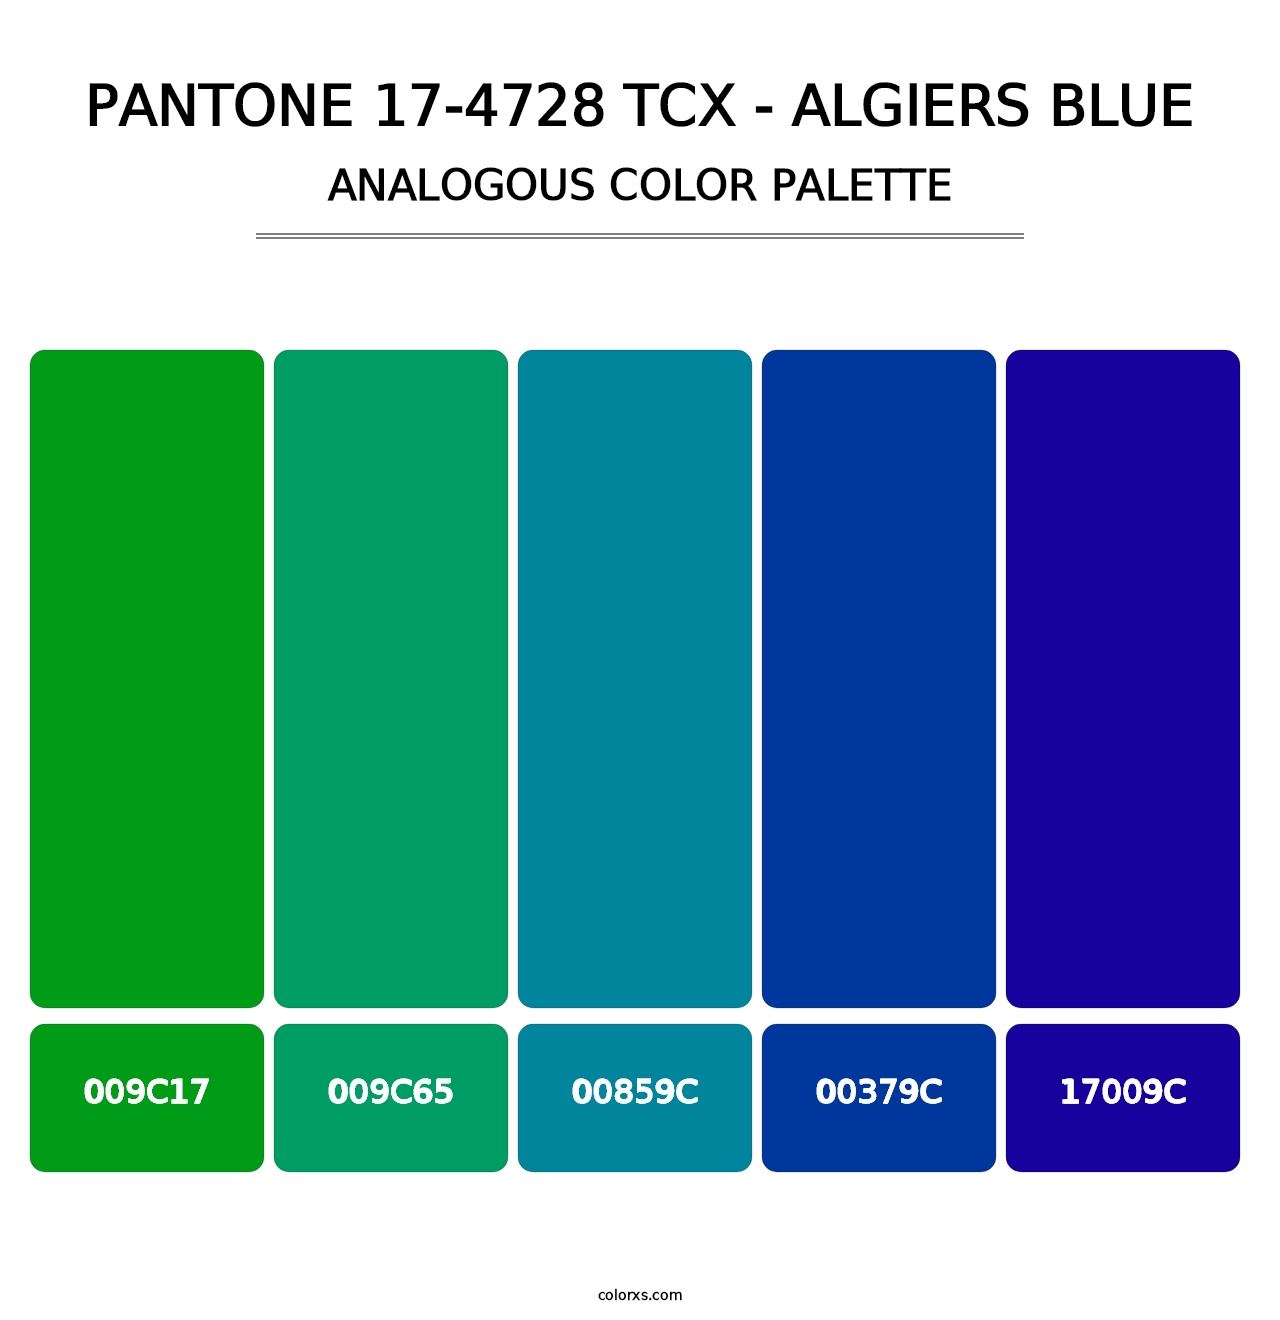 PANTONE 17-4728 TCX - Algiers Blue - Analogous Color Palette